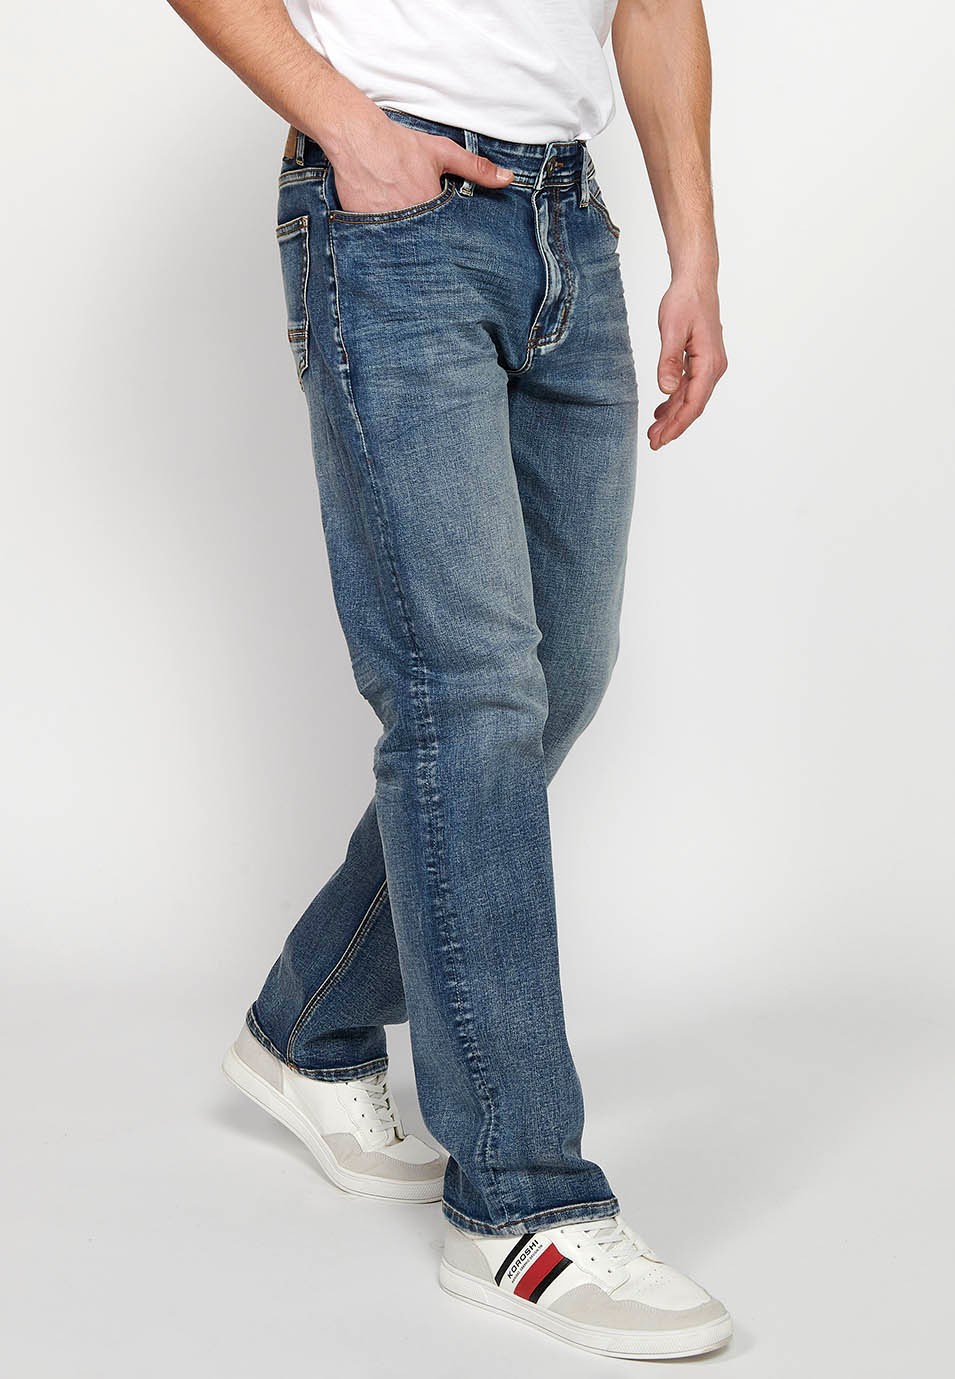 Pantalons llargs jeans xinès comfort fit amb Tancament davanter amb cremallera i botó de Color Blau per a Home